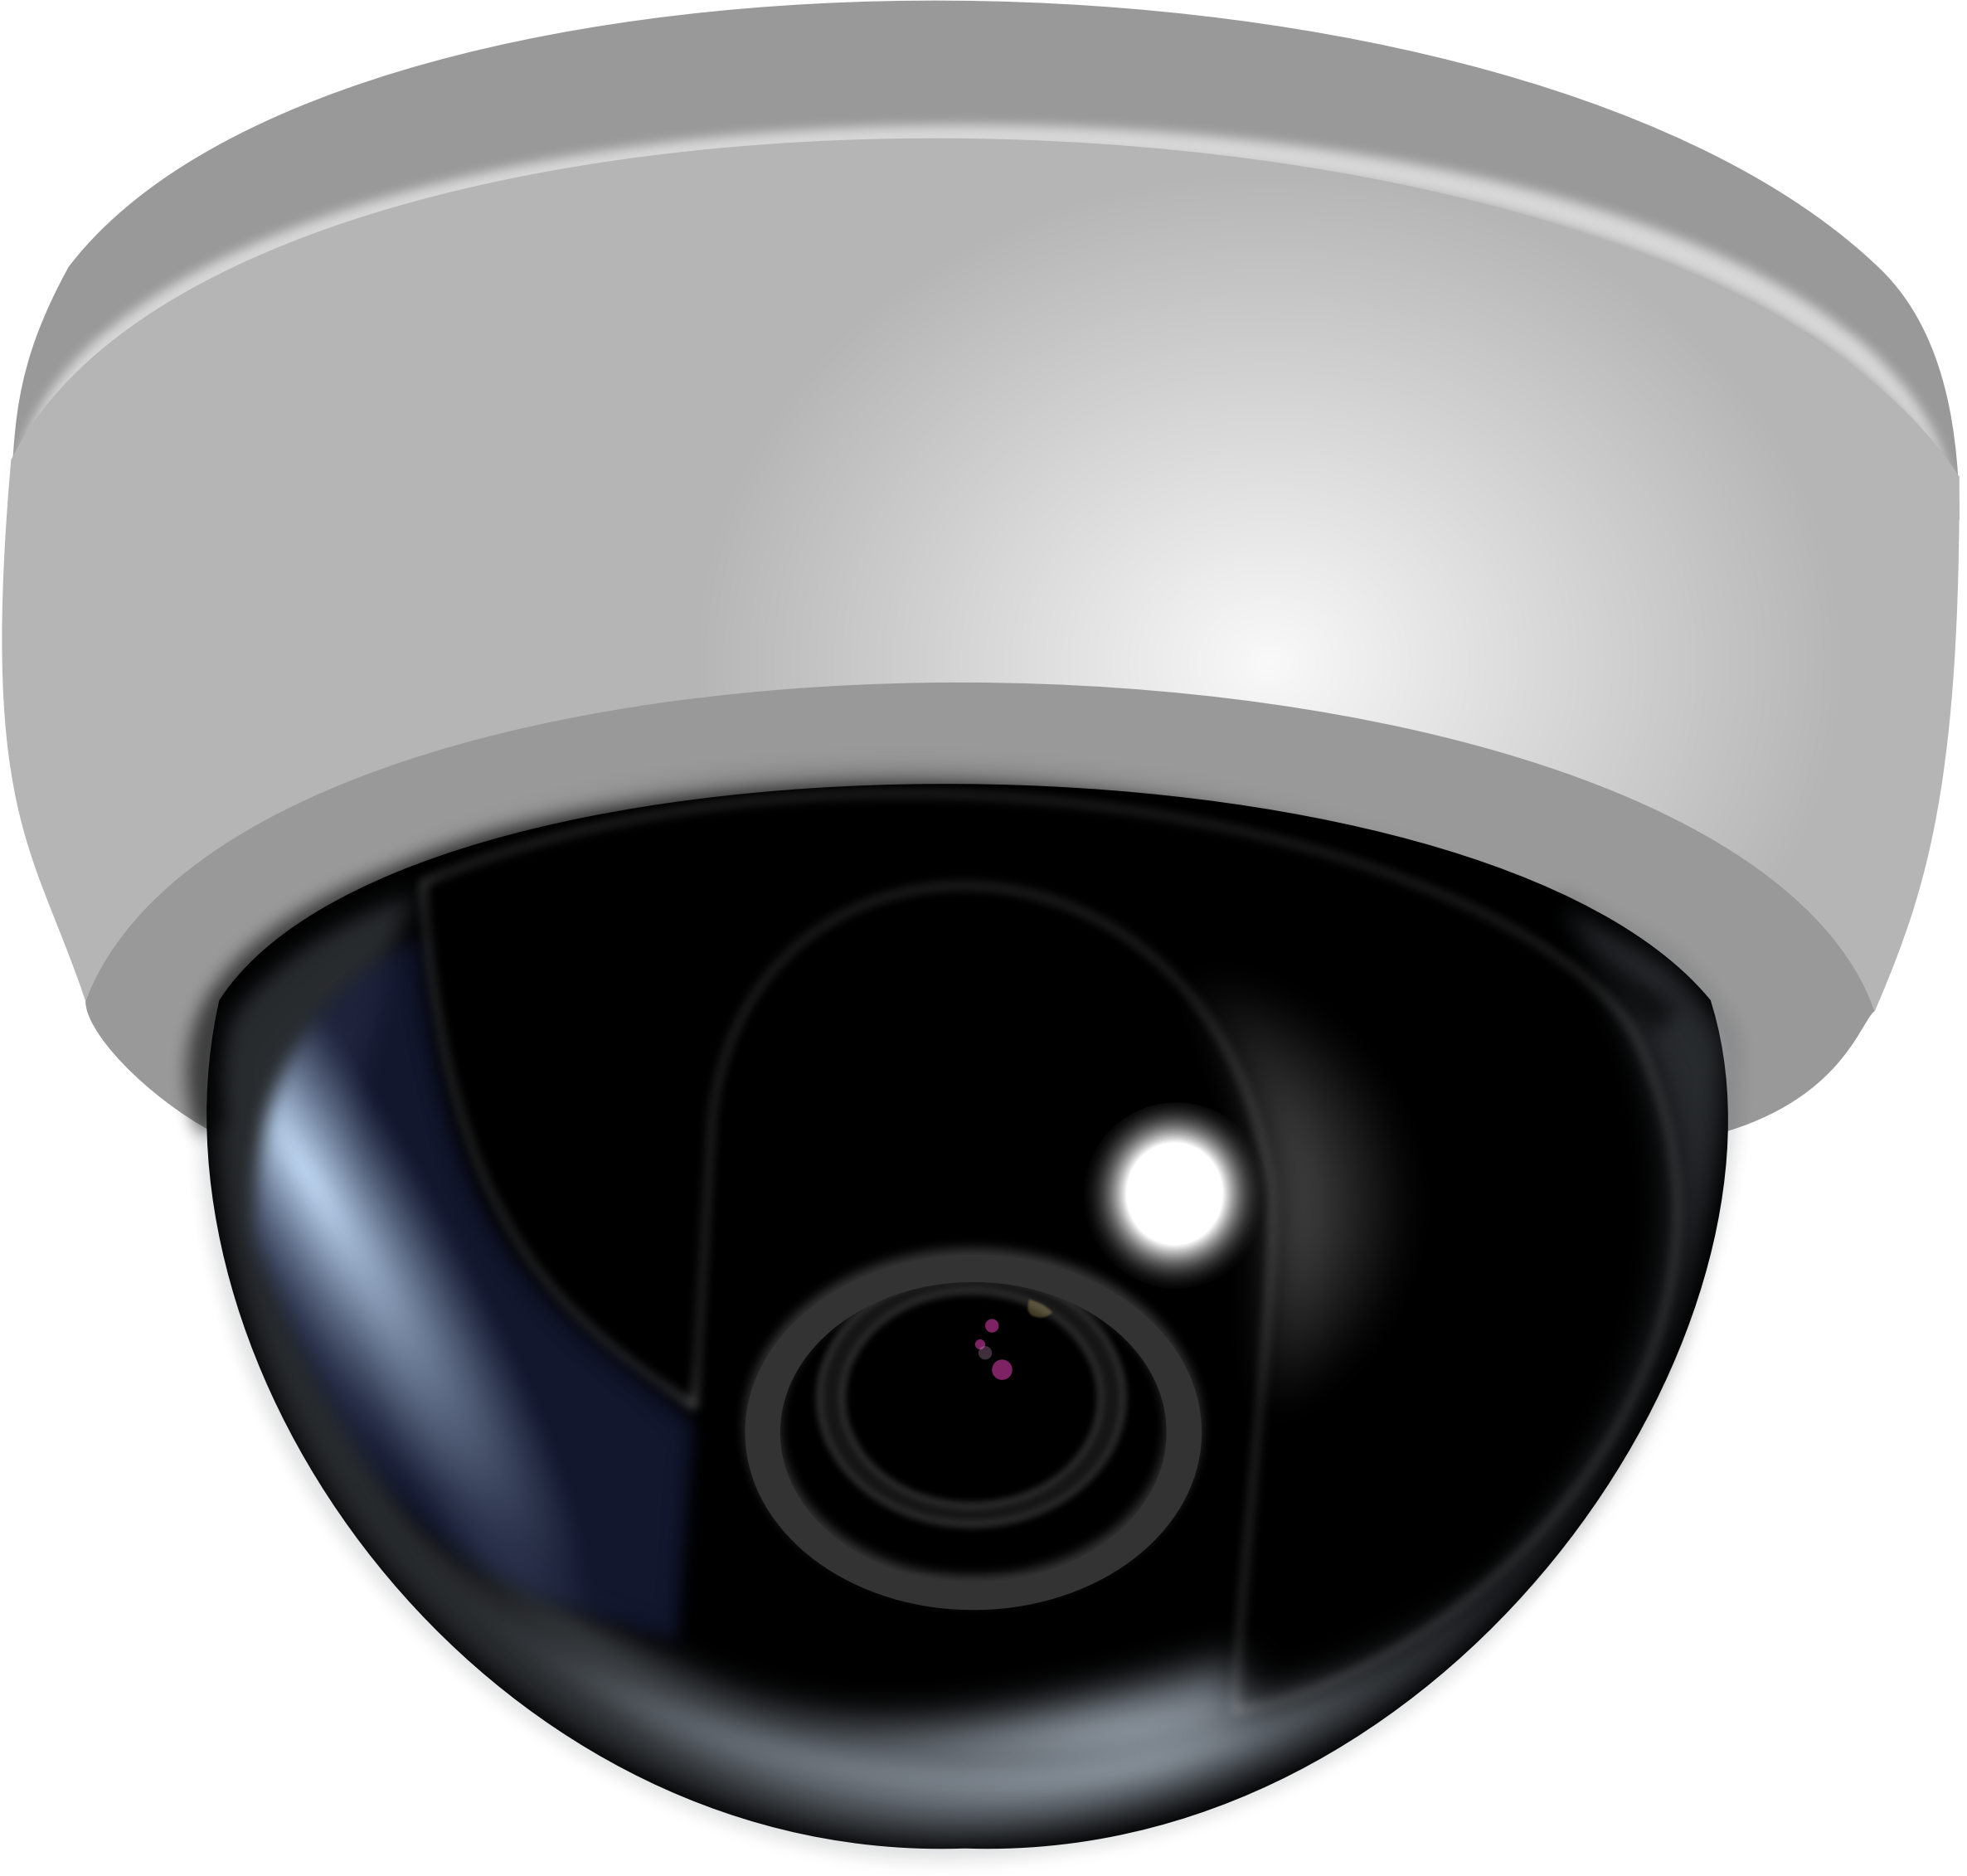 EMN-2320: IP-камера купольная. Камера видеонаблюдения kce243951. Камера видеонаблюдения круглая. Значок камеры видеонаблюдения.